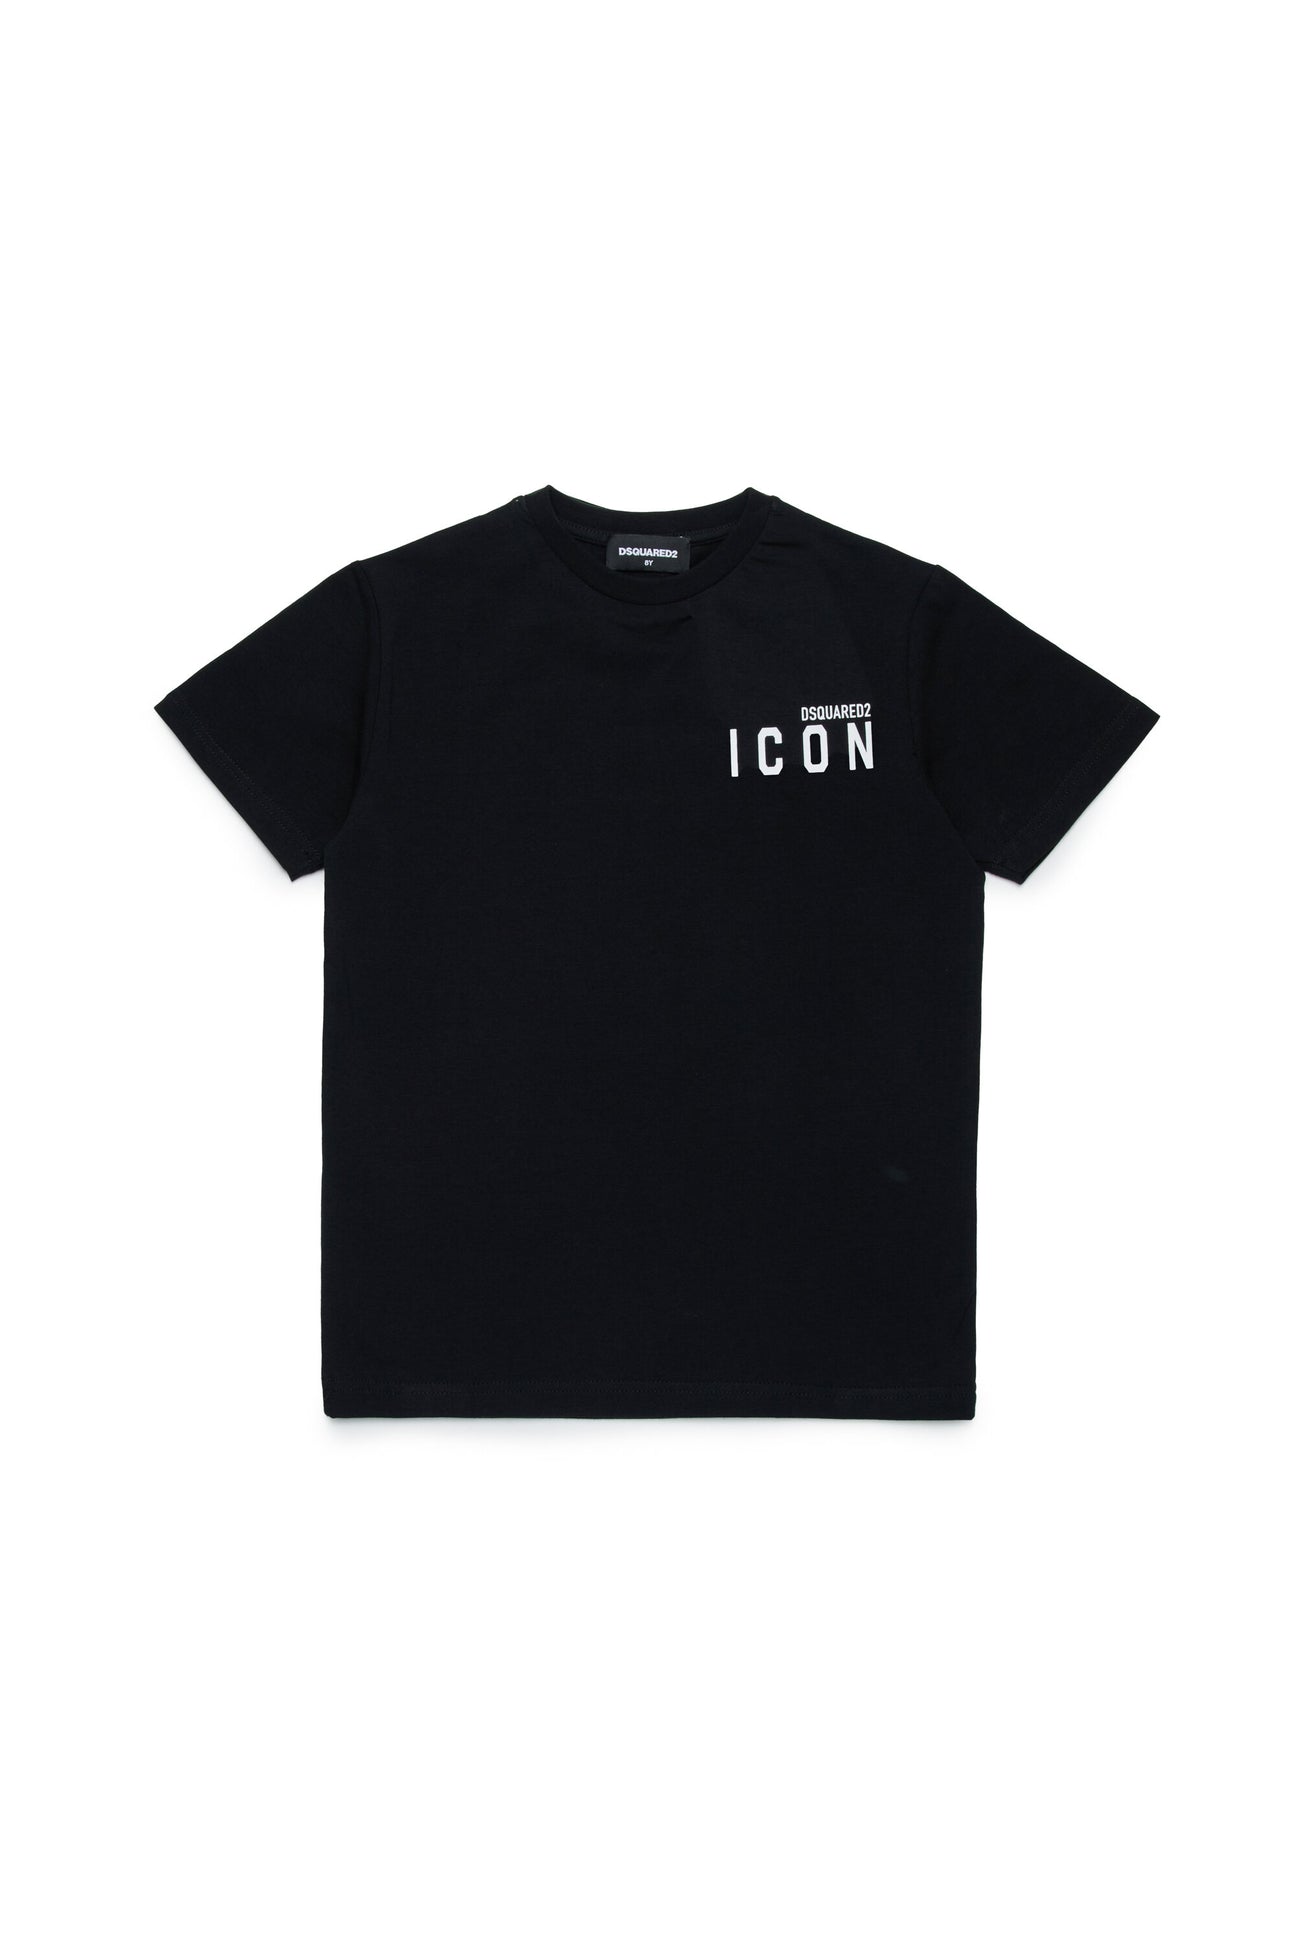 ICON branded underwear T-shirt ICON branded underwear T-shirt